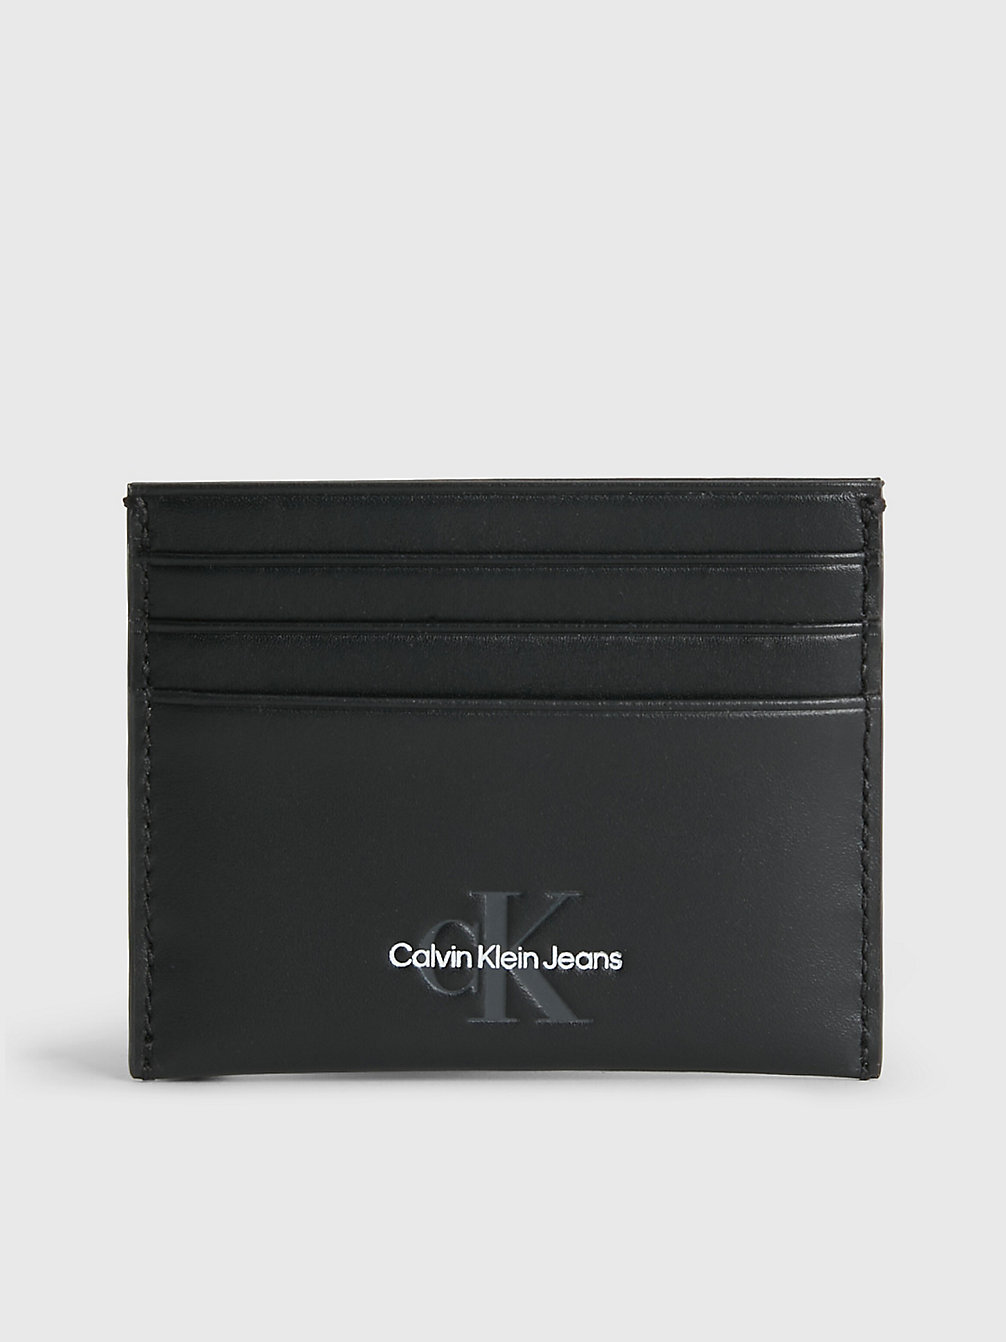 BLACK > Kartenetui Aus Leder > undefined Herren - Calvin Klein